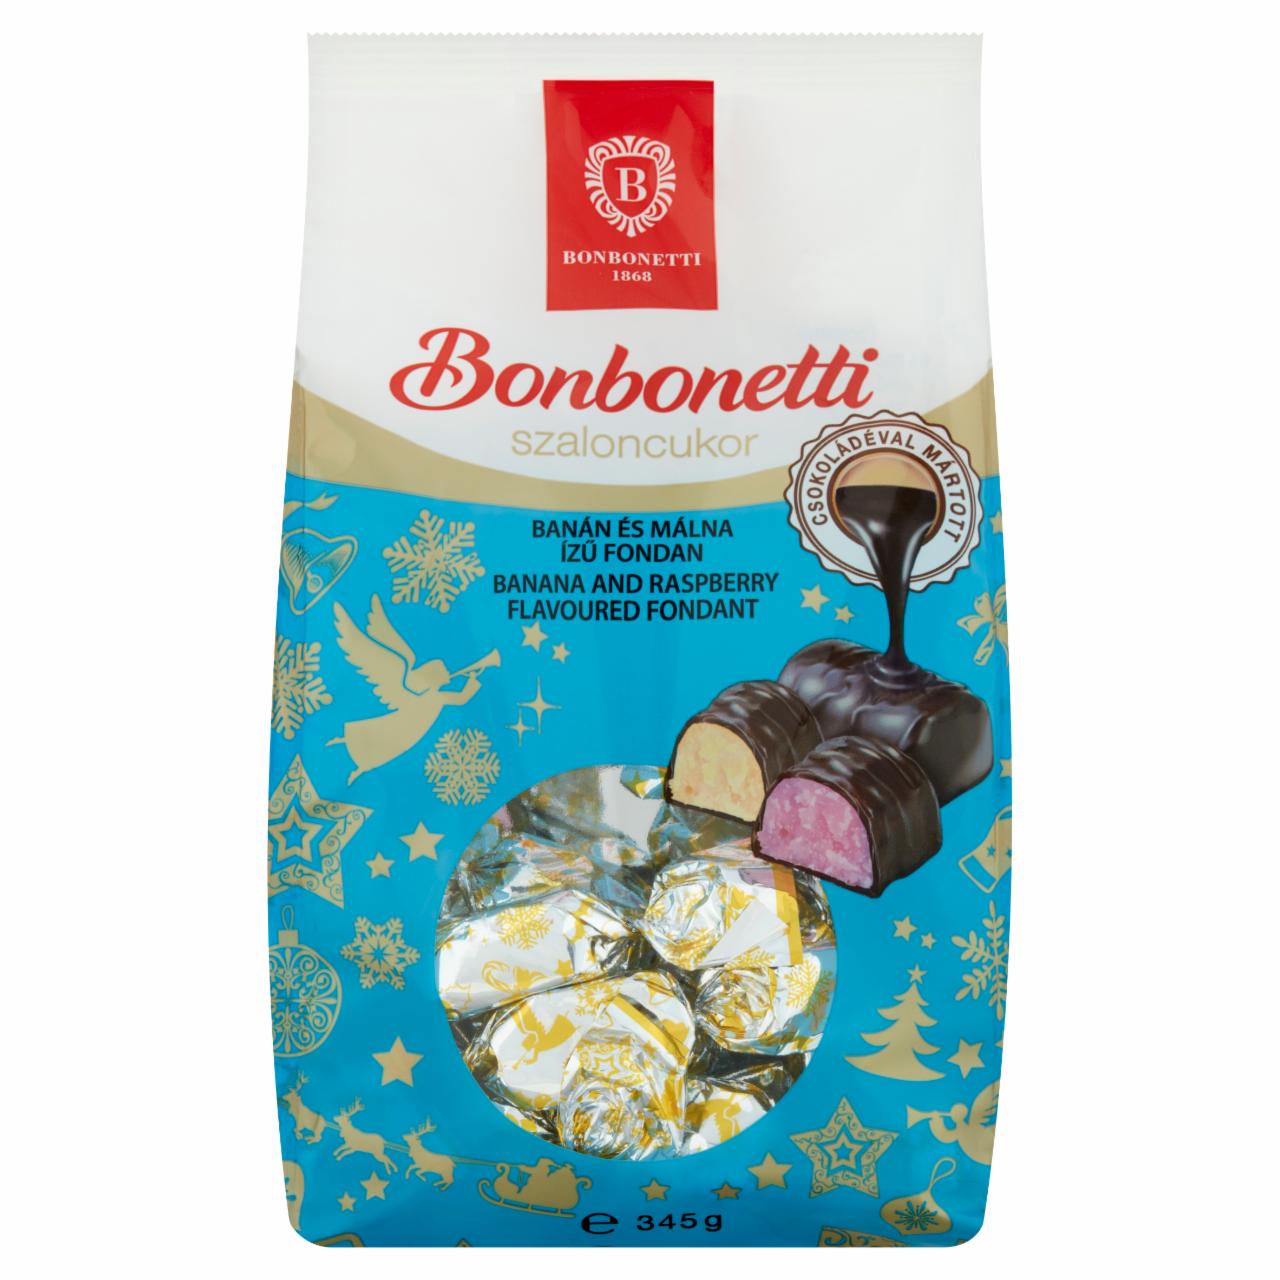 Képek - Bonbonetti étcsokoládéval mártott banán és málna ízű fondanszaloncukor 345 g